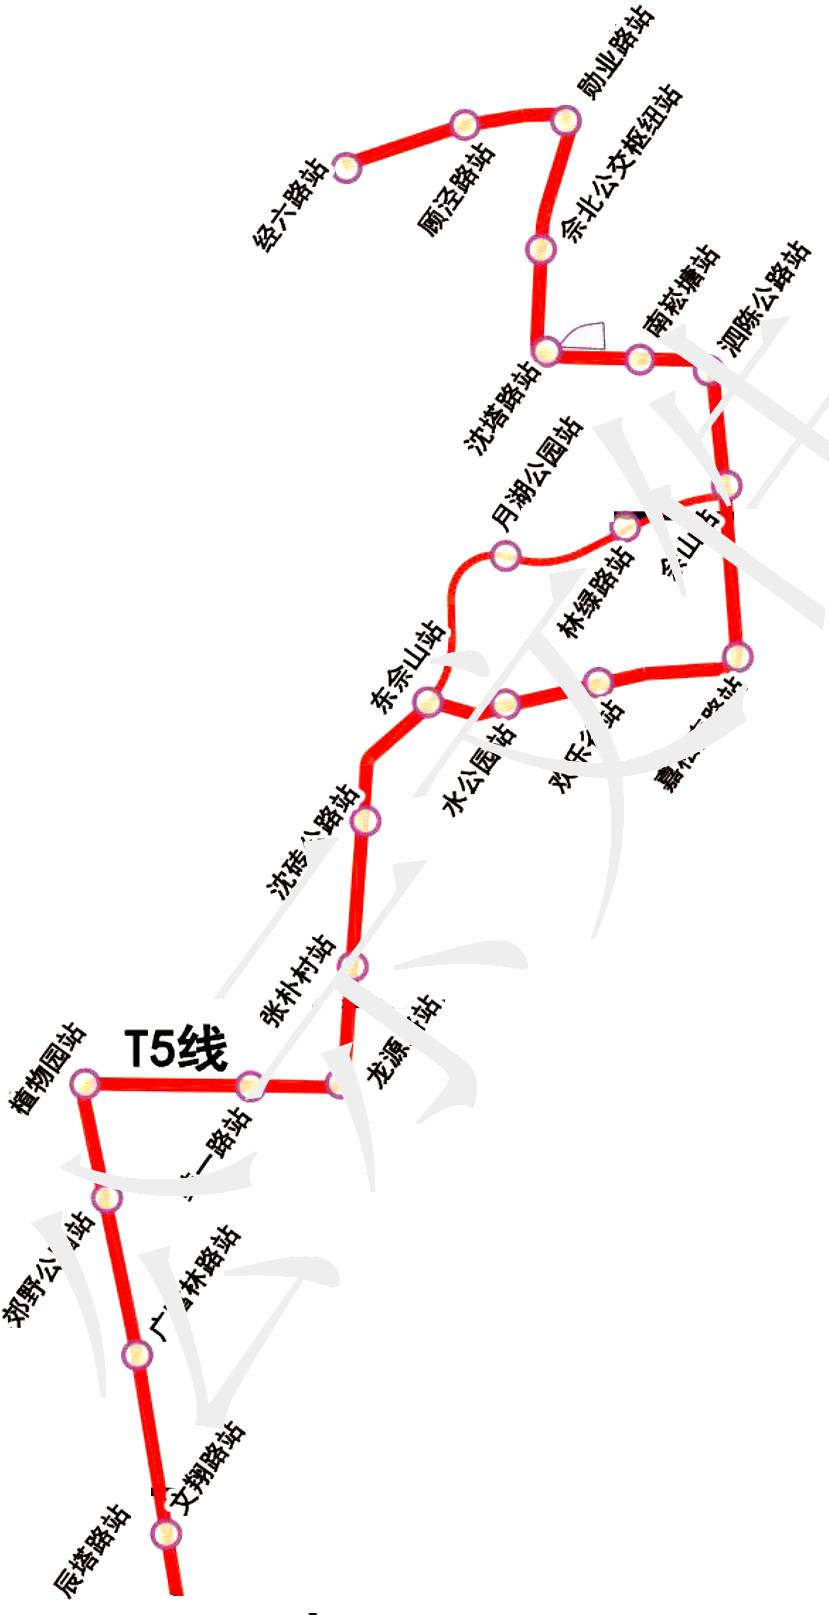 松江有轨电车t5规划图图片